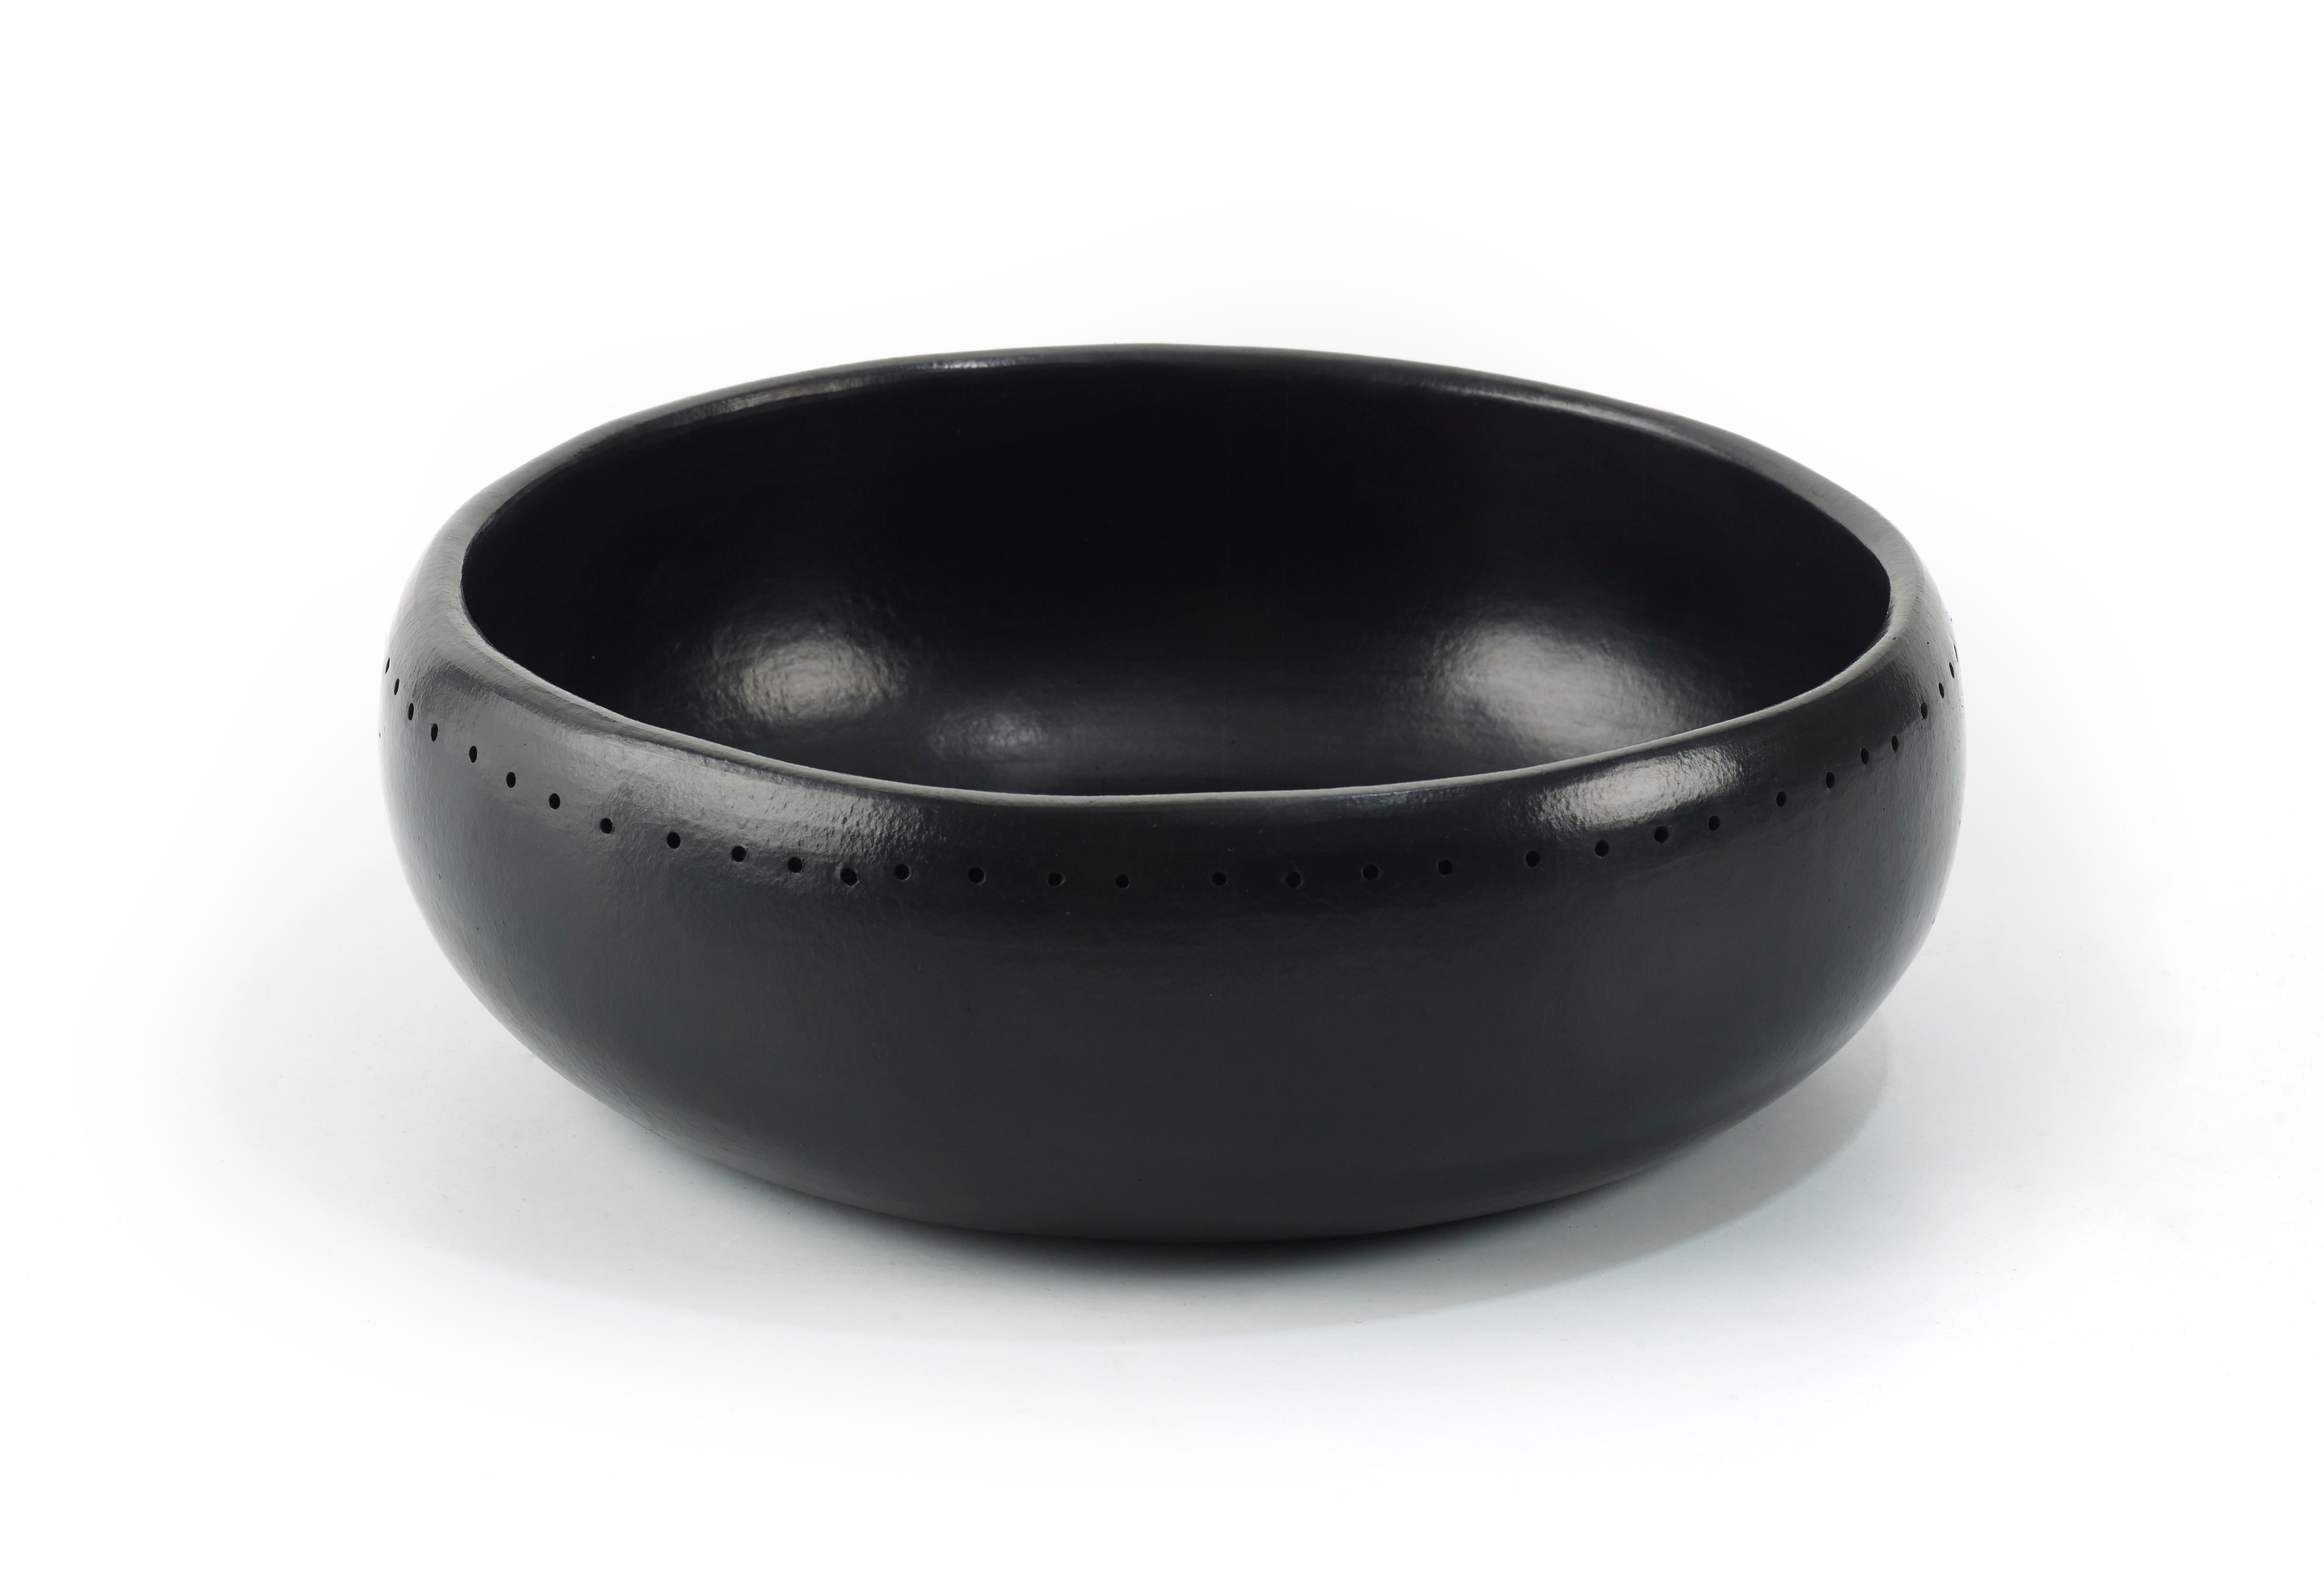 Kleine Schale Barro dining von Sebastian Herkner
MATERIALIEN: Hitzebeständige schwarze Keramik. 
Technik: Glasiert. Im Ofen gegart und mit Halbedelsteinen poliert. 
Abmessungen: Durchmesser 27 cm x Höhe 8 cm 
Erhältlich in den Größen: Large,